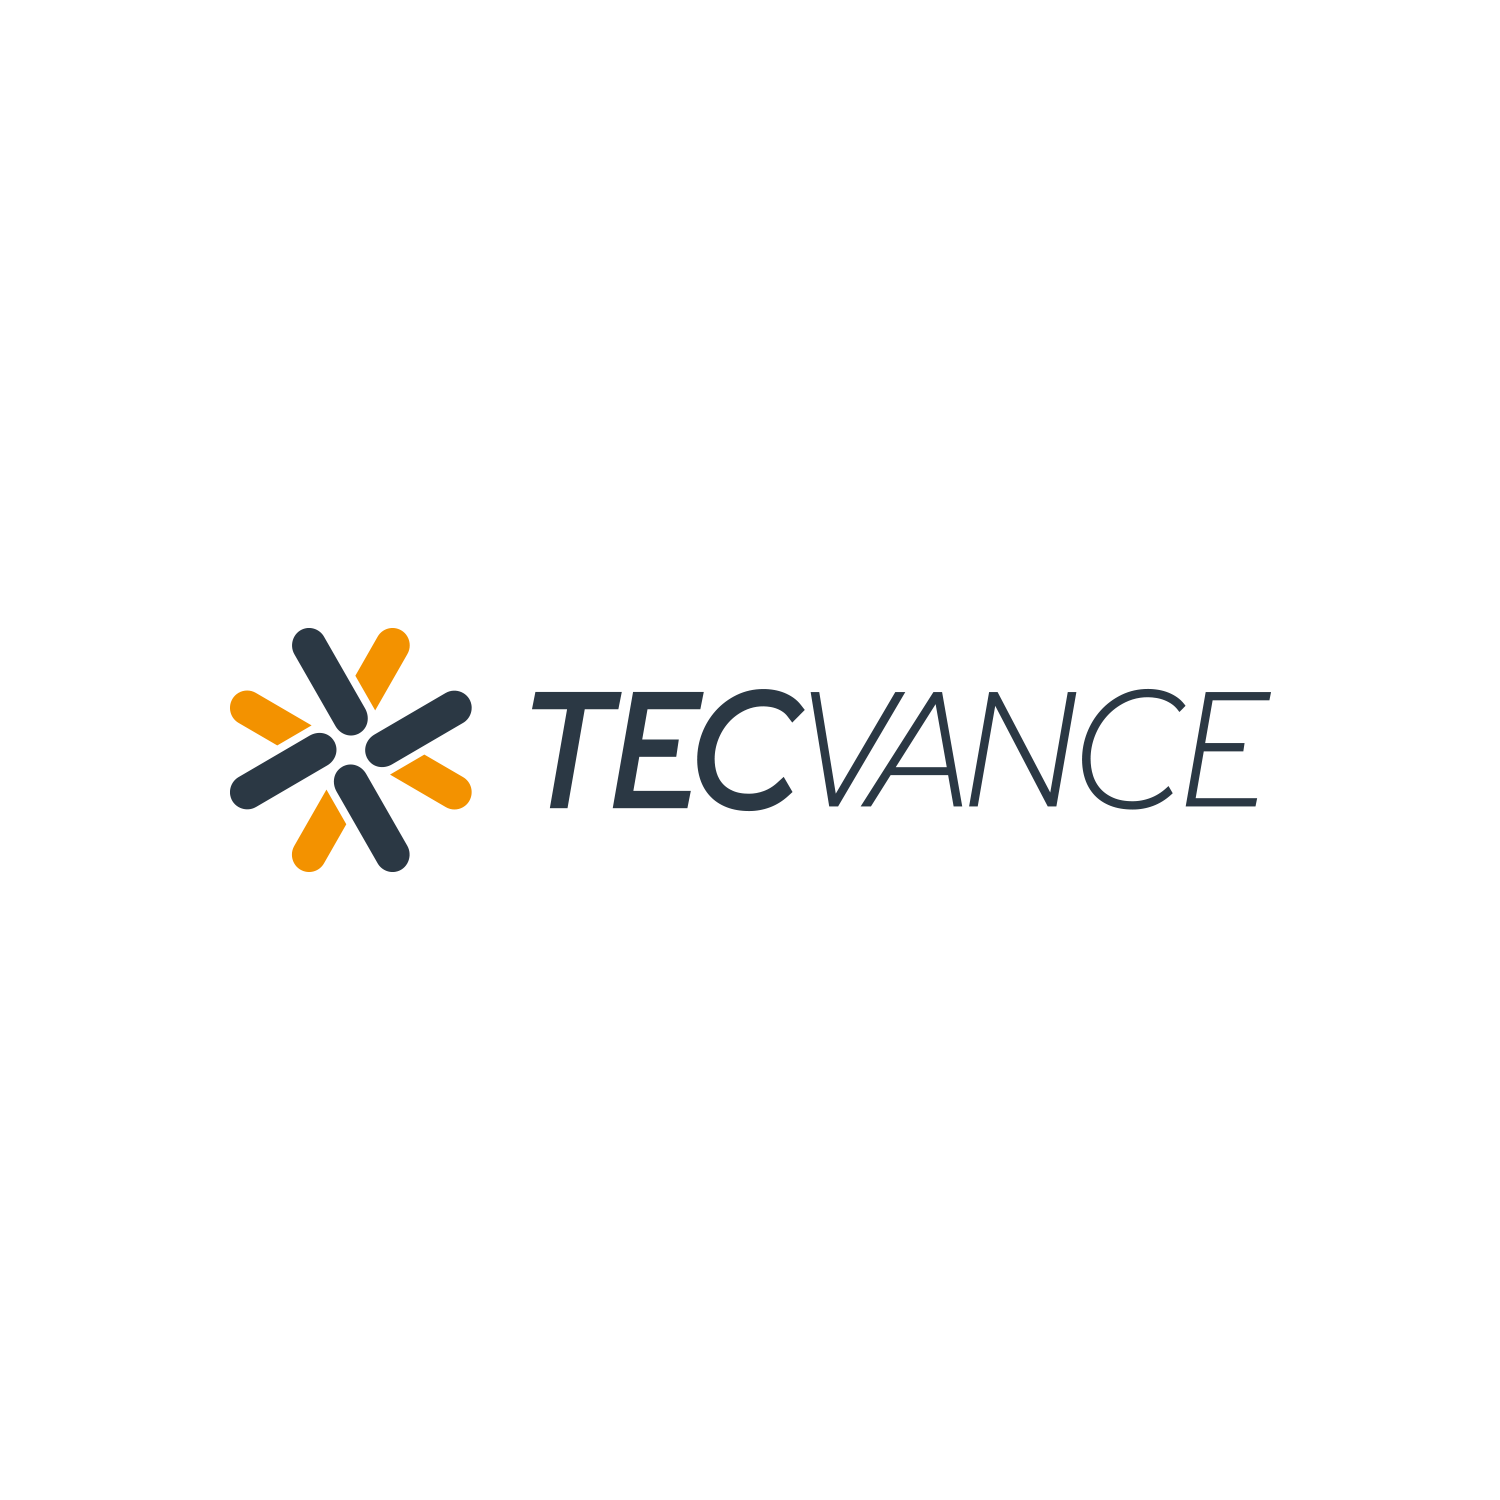 Tecvance logo